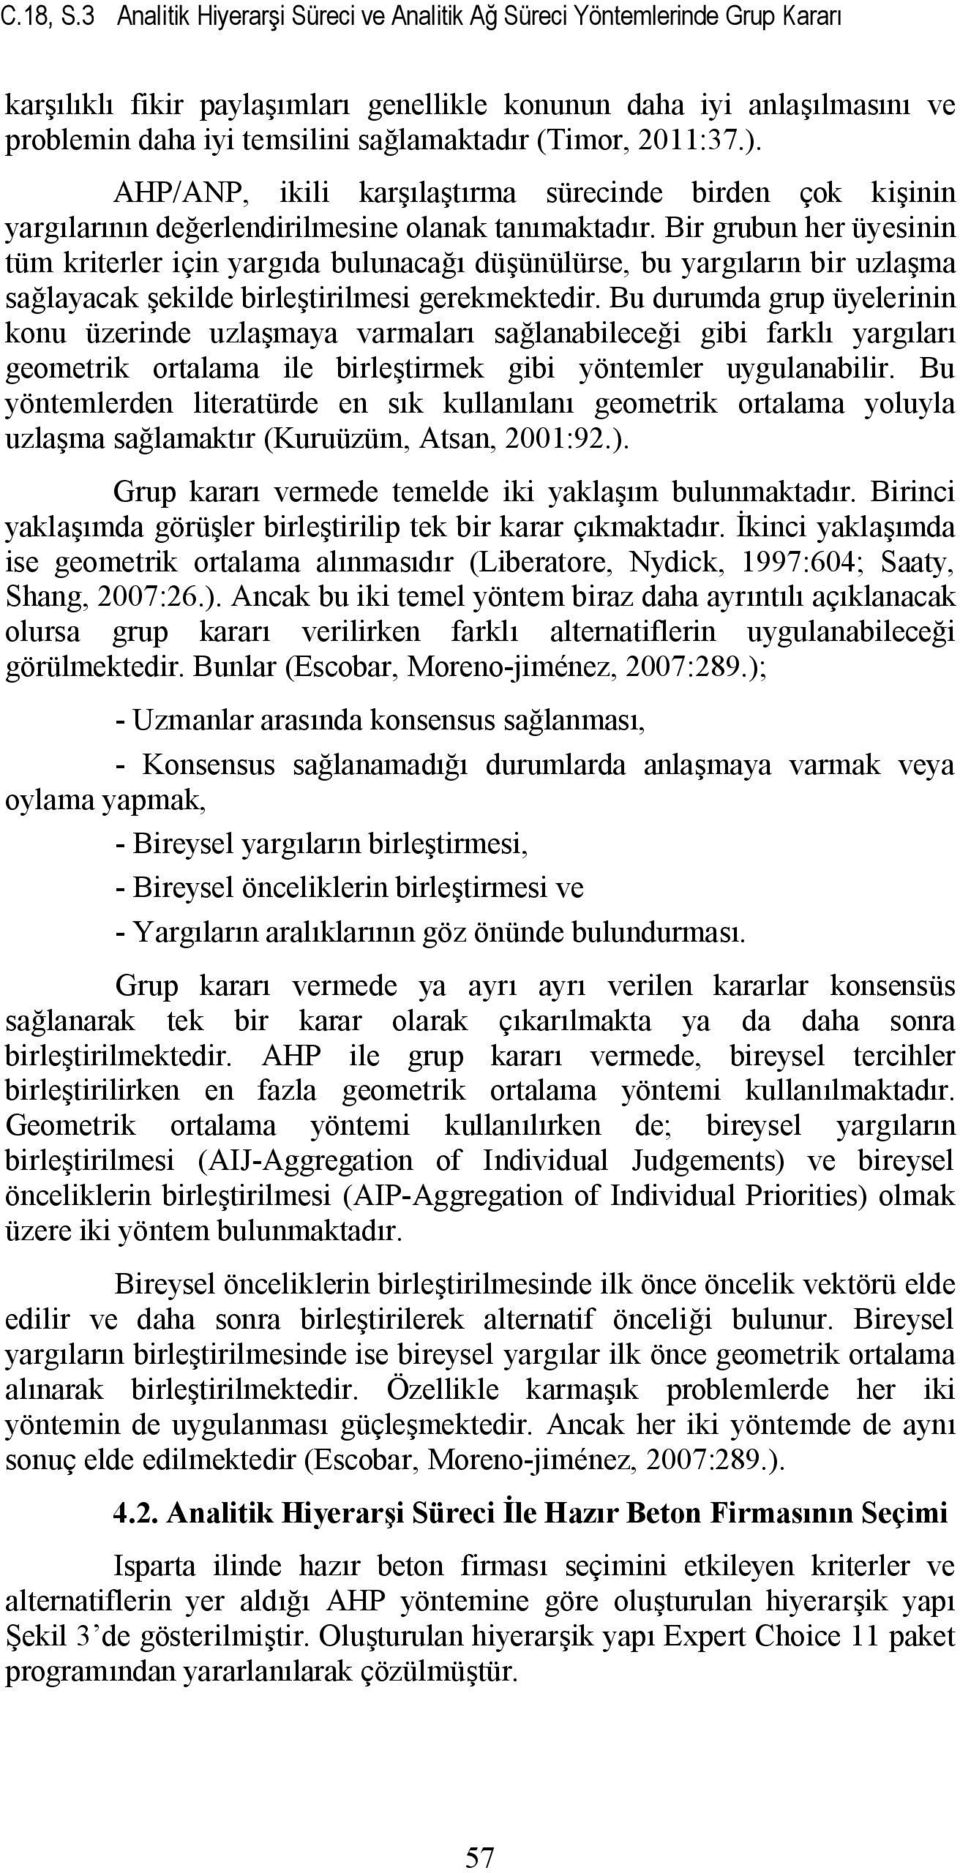 (Timor, 2011:37.). AHP/ANP, ikili karşılaştırma sürecinde birden çok kişinin yargılarının değerlendirilmesine olanak tanımaktadır.